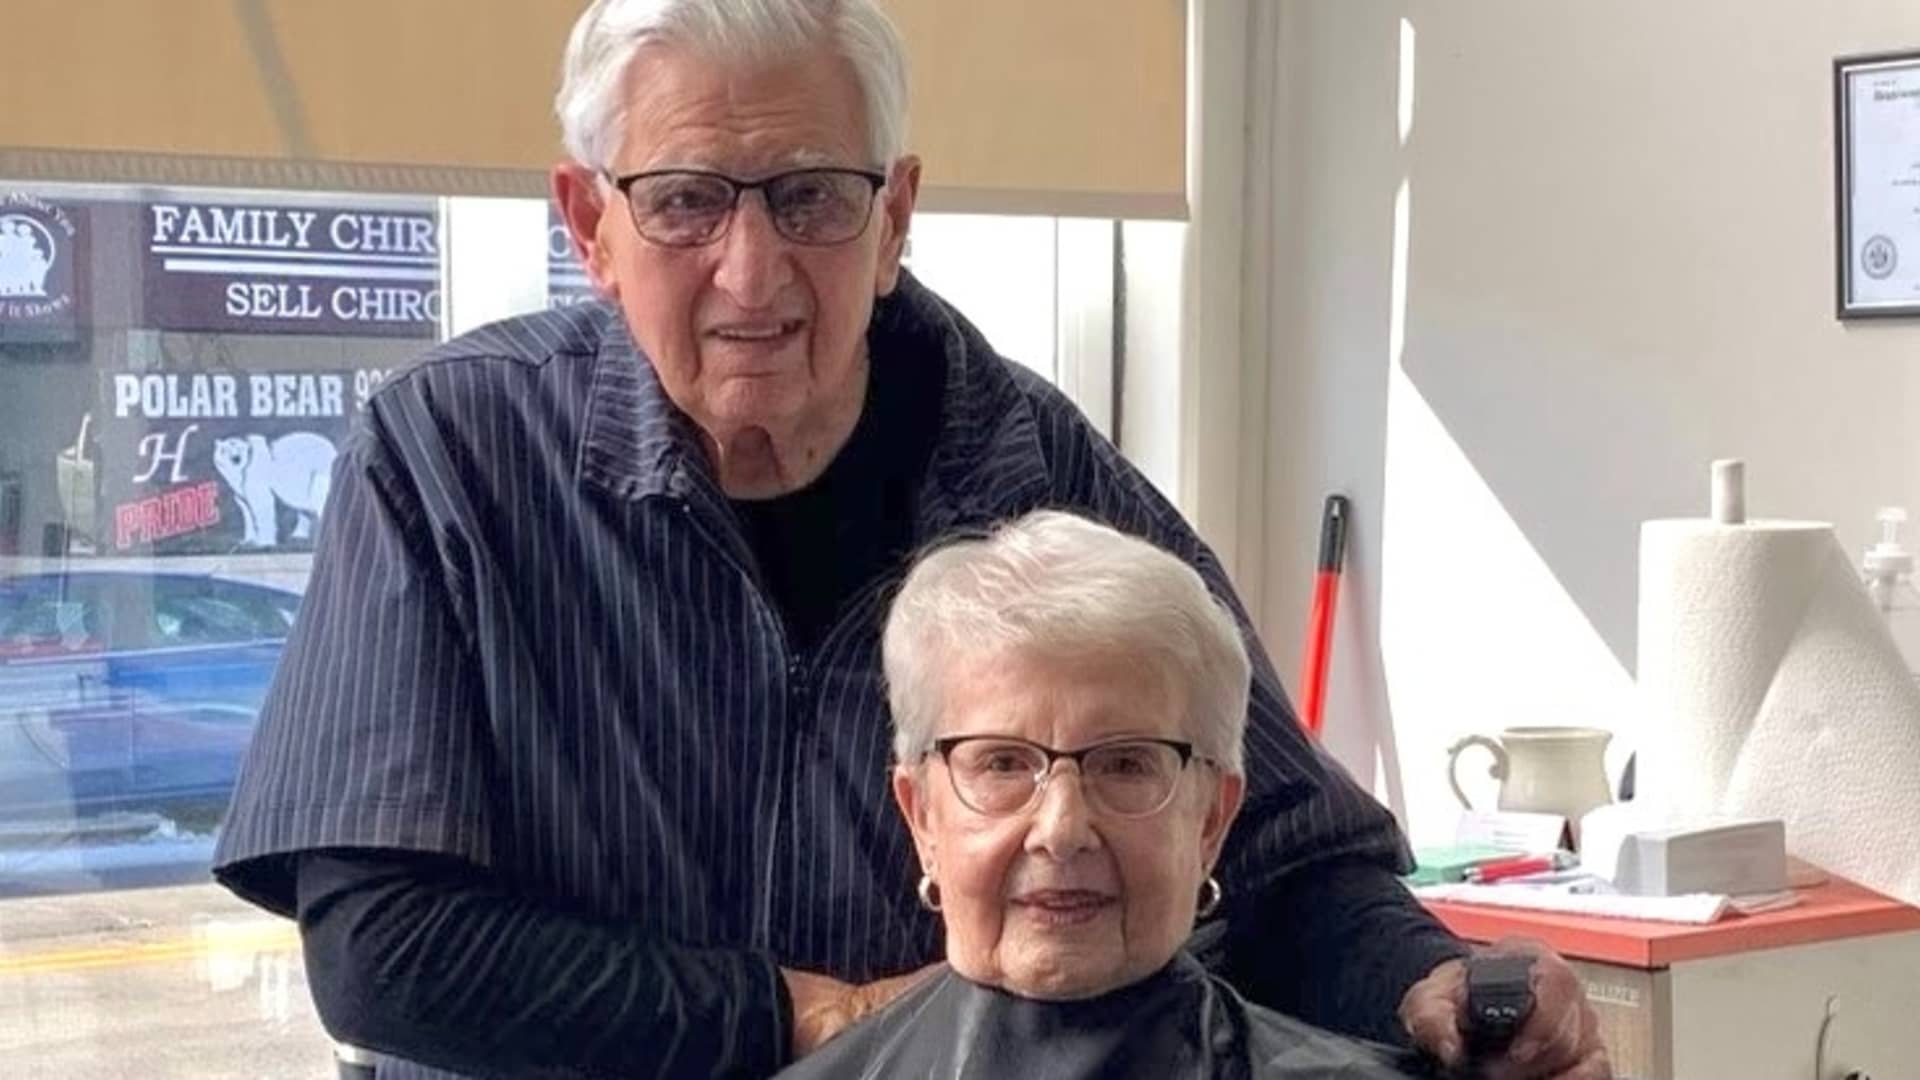 Bob Rohloff cuts his wife Marian's hair at his new barbershop.